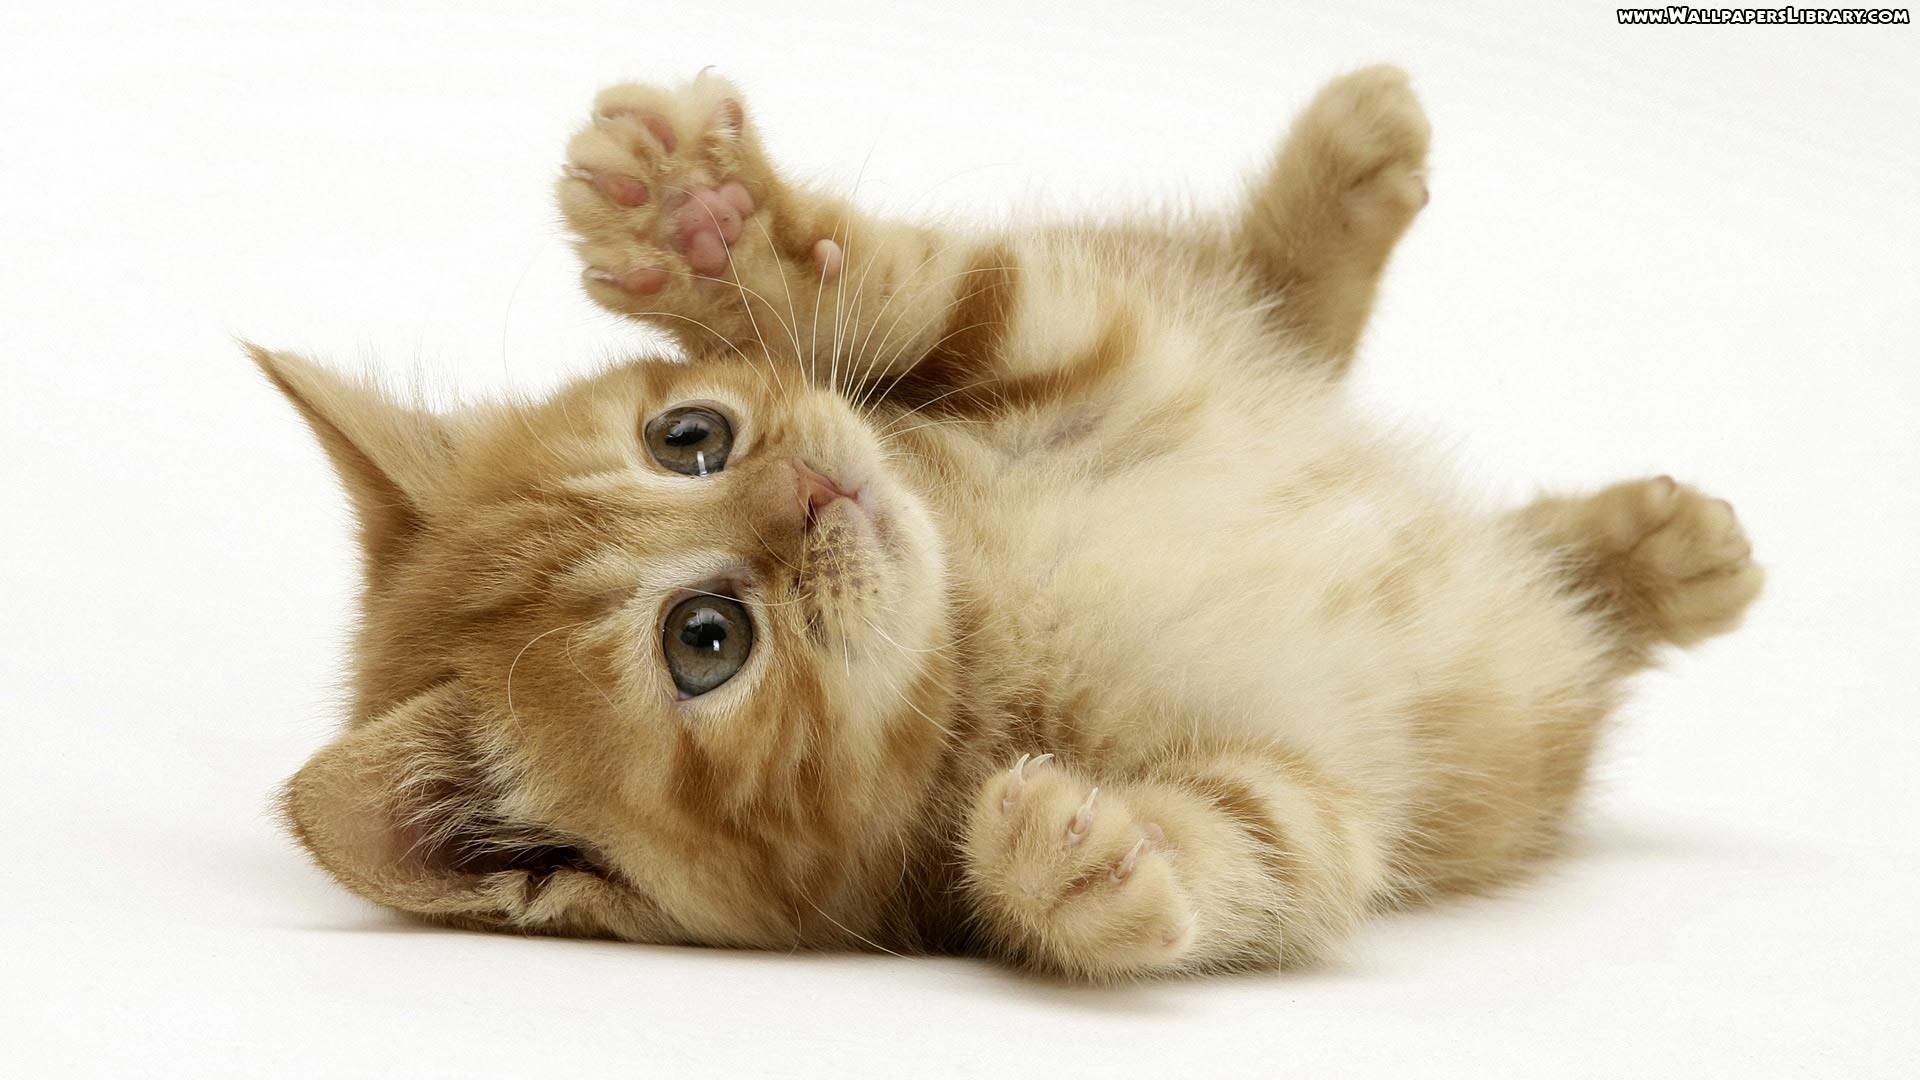 Mèo con dễ thương (cute kitten): Bạn yêu mèo chăng? Hãy xem hình ảnh một chú mèo con dễ thương, với đôi mắt to tròn và bộ lông mịn màng. Chắc chắn đó là một phút giây thư giãn tuyệt vời cho mỗi người yêu động vật!